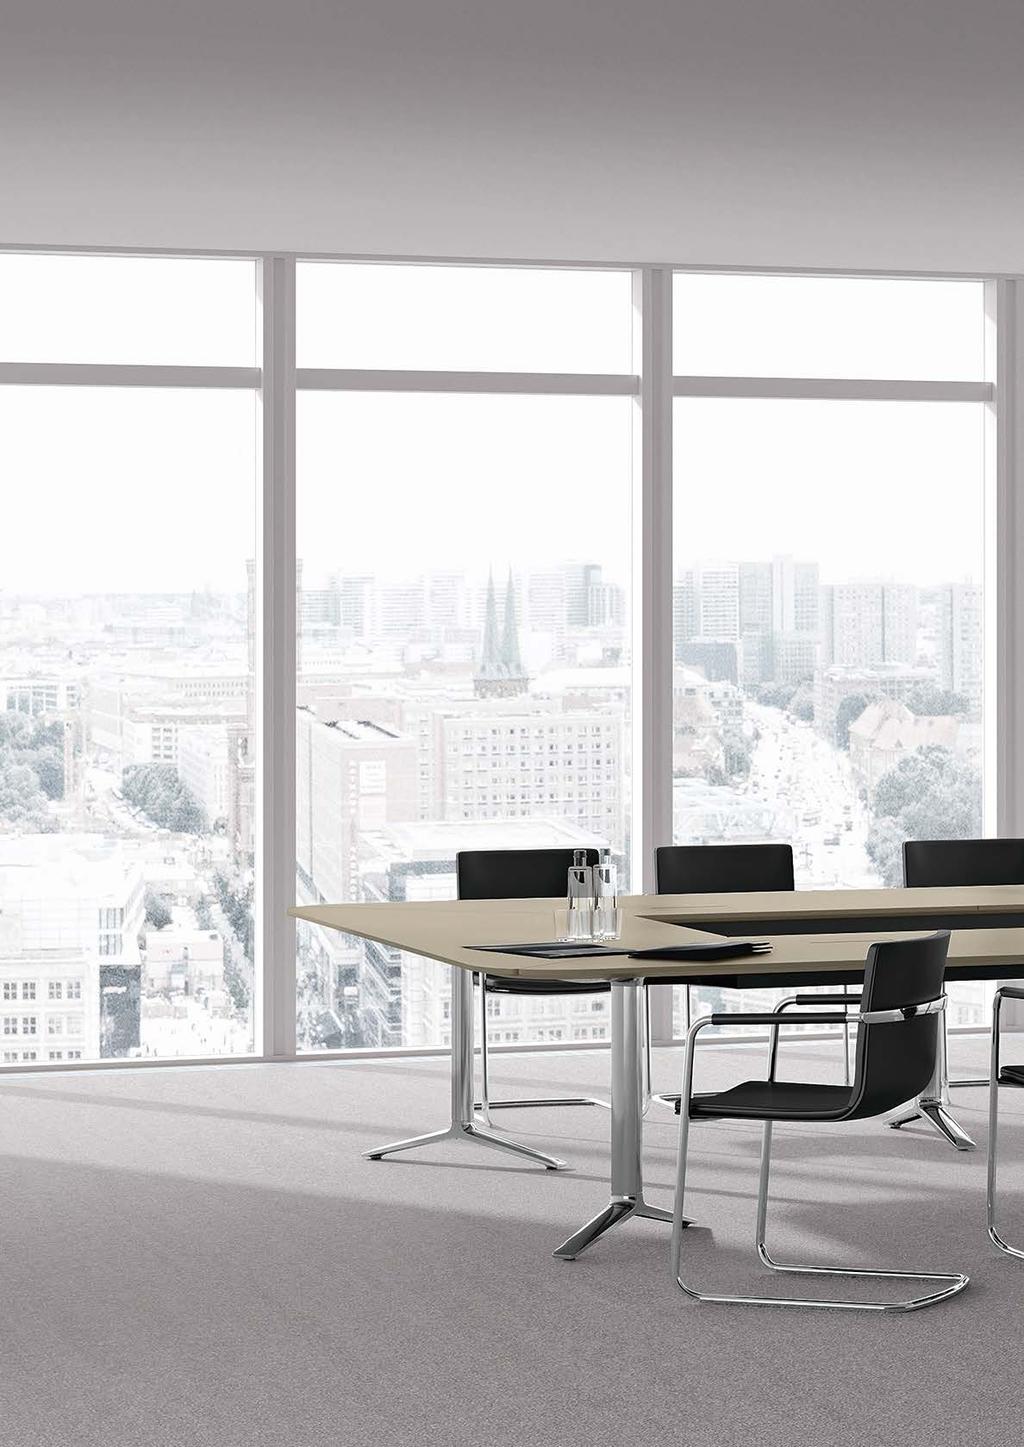 (Design: Jehs + Laub) öffnet neue Perspektiven. Ein intelligentes Tischsystem für flexible sowie für feststehende Konferenzanlagen, für Tagungen, Besprechungen und Seminare.